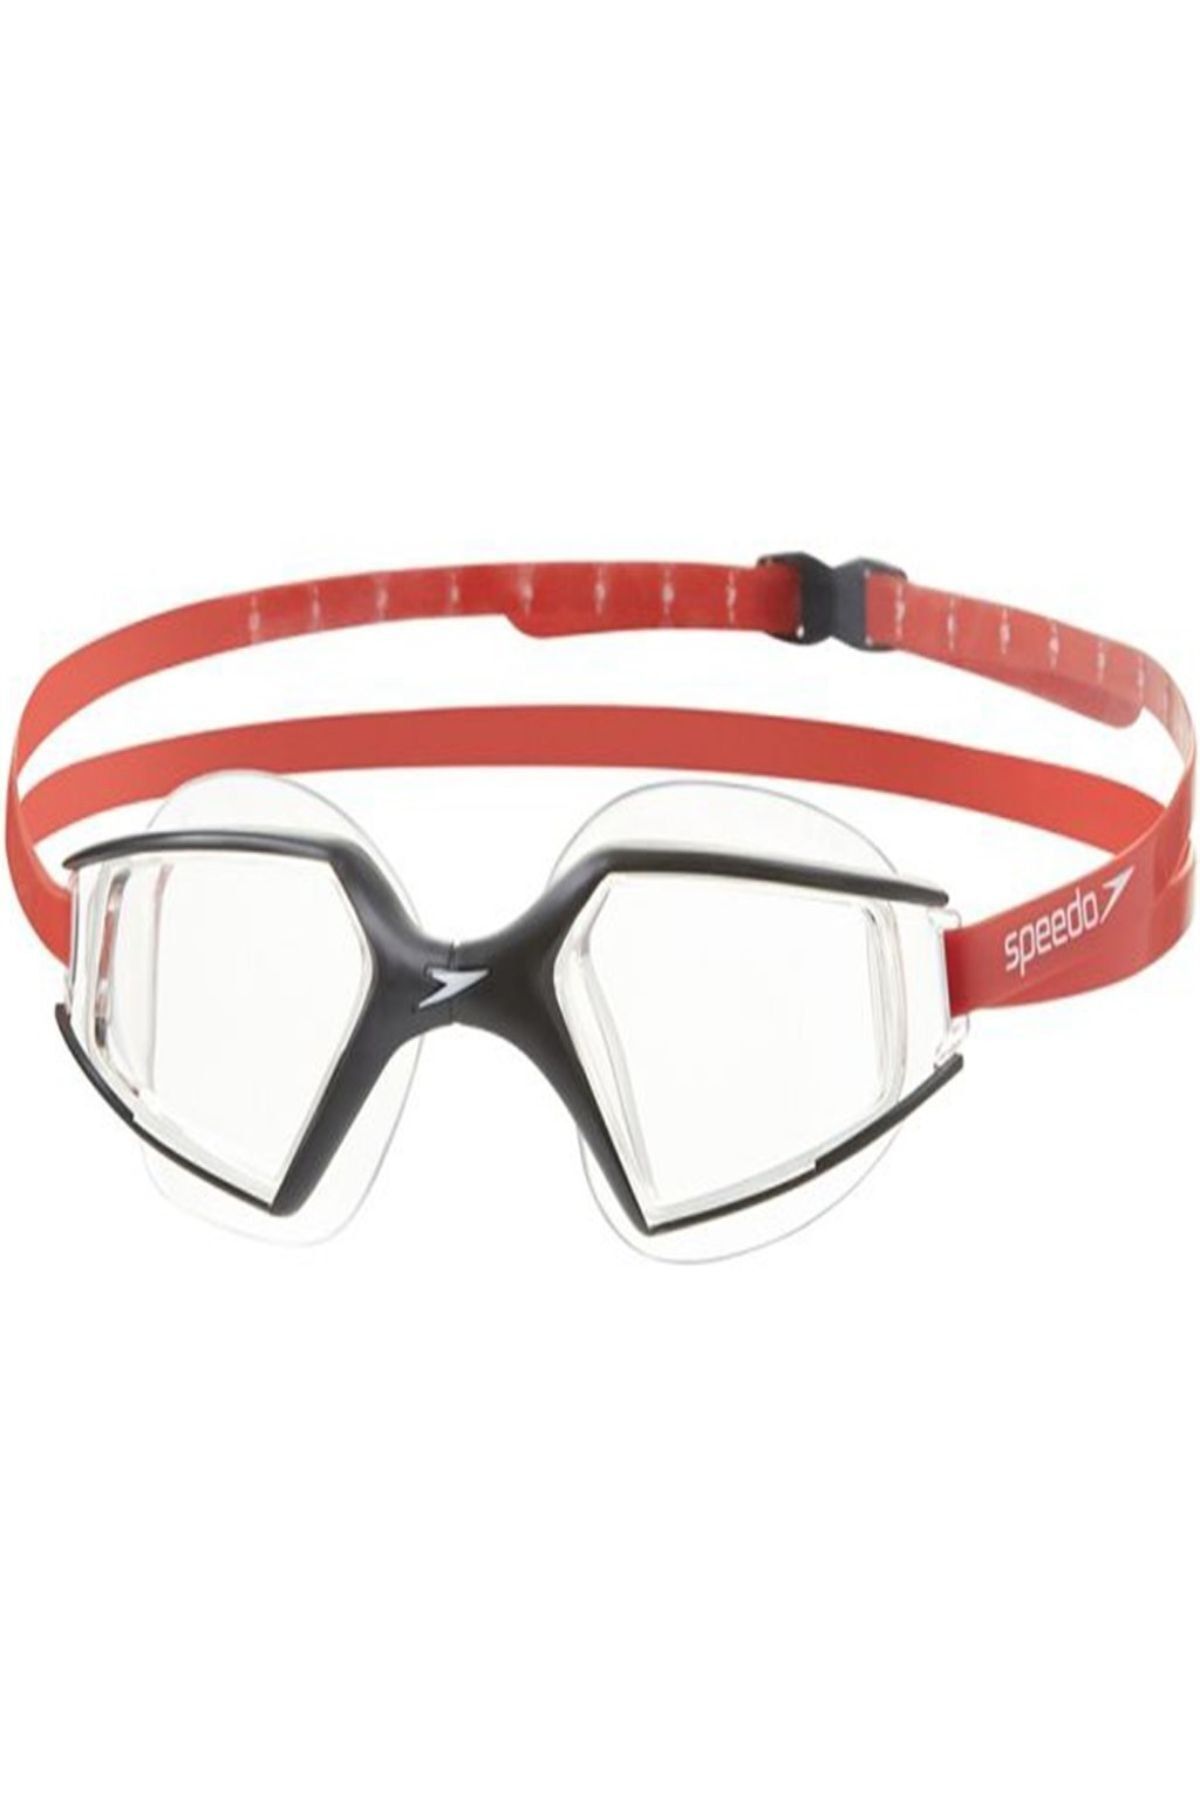 SPEEDO Aquapulse Kadın Yüzücü Gözlüğü - Siyah/Kırmızı